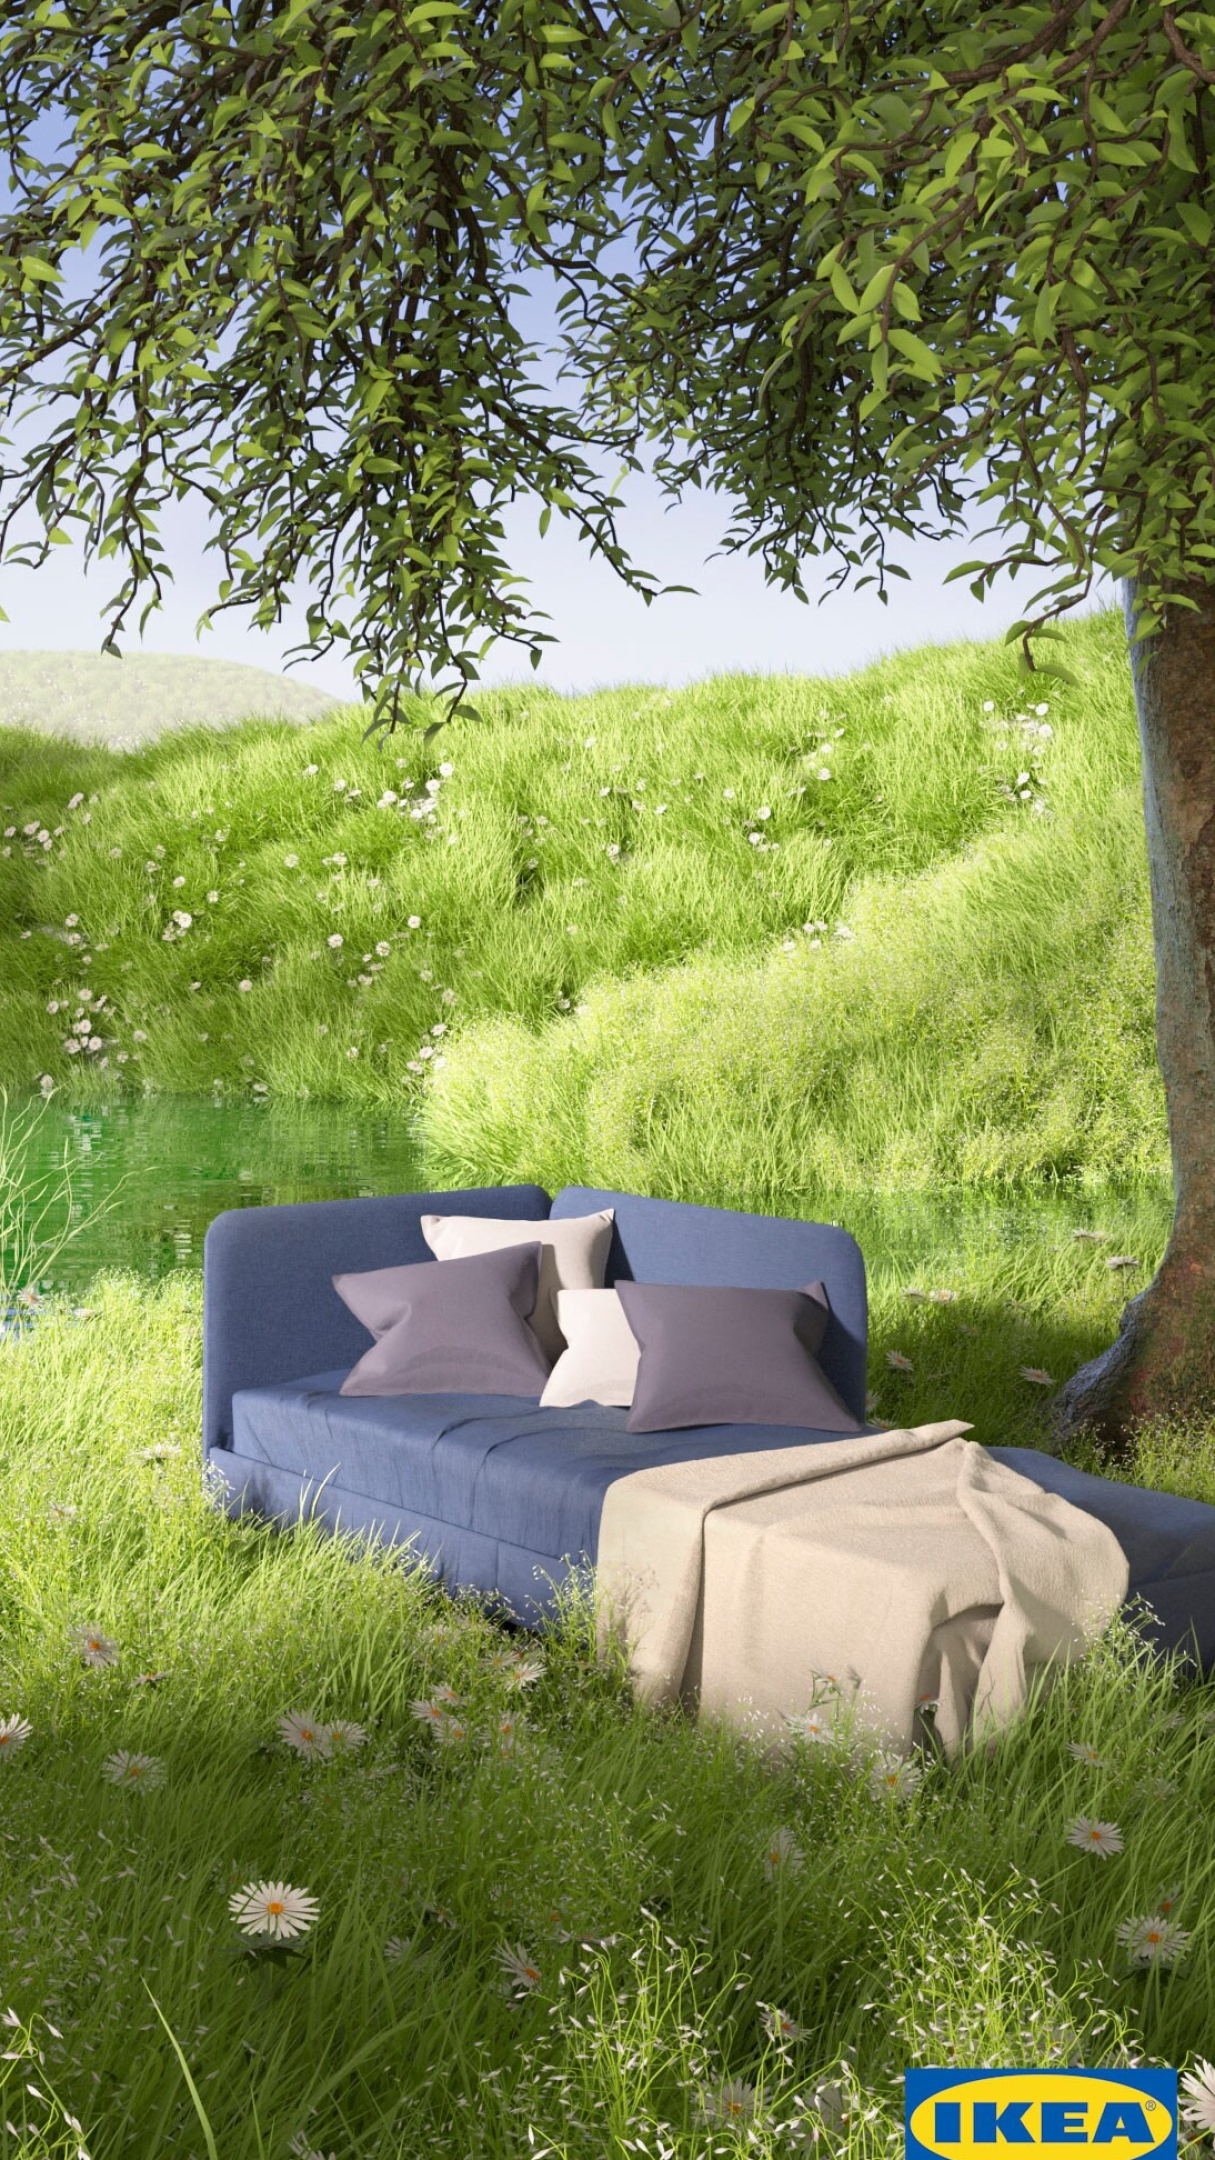 Ikea: BLAKULLEN bed frame, Swedish furniture giant. 1220x2160 HD Background.